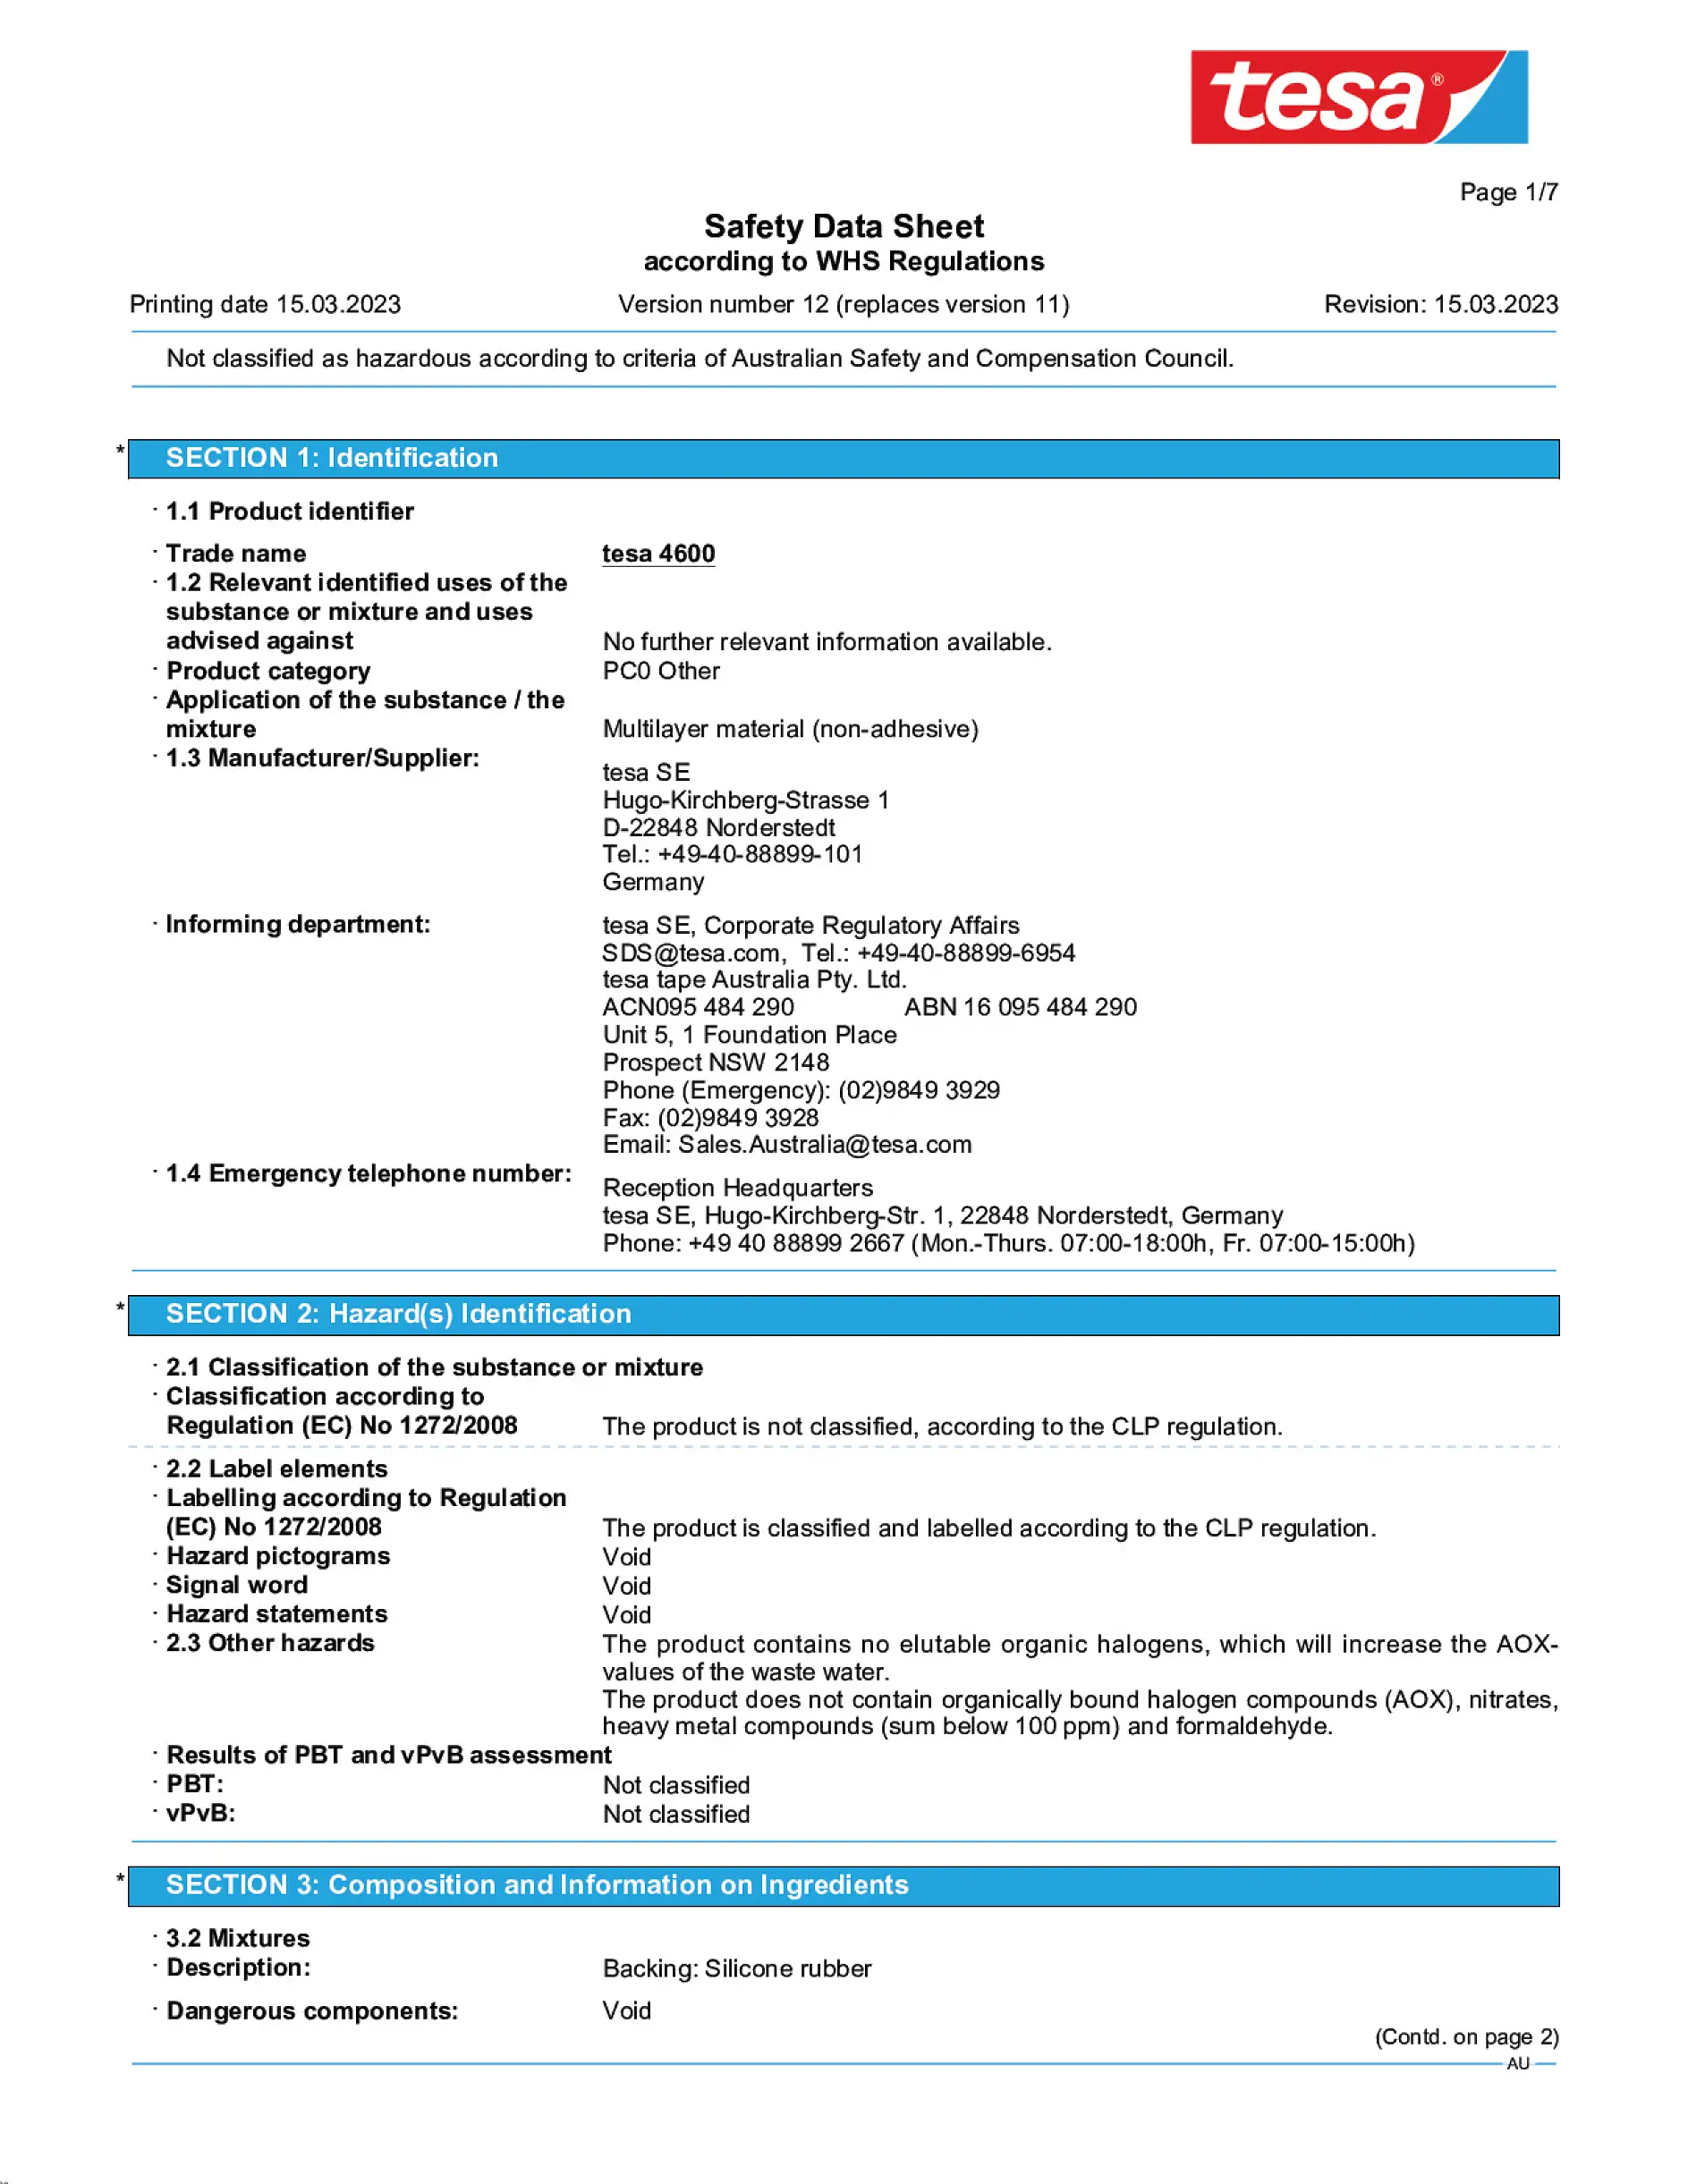 Safety data sheet_tesa® Professional 04600_en-AU_v12